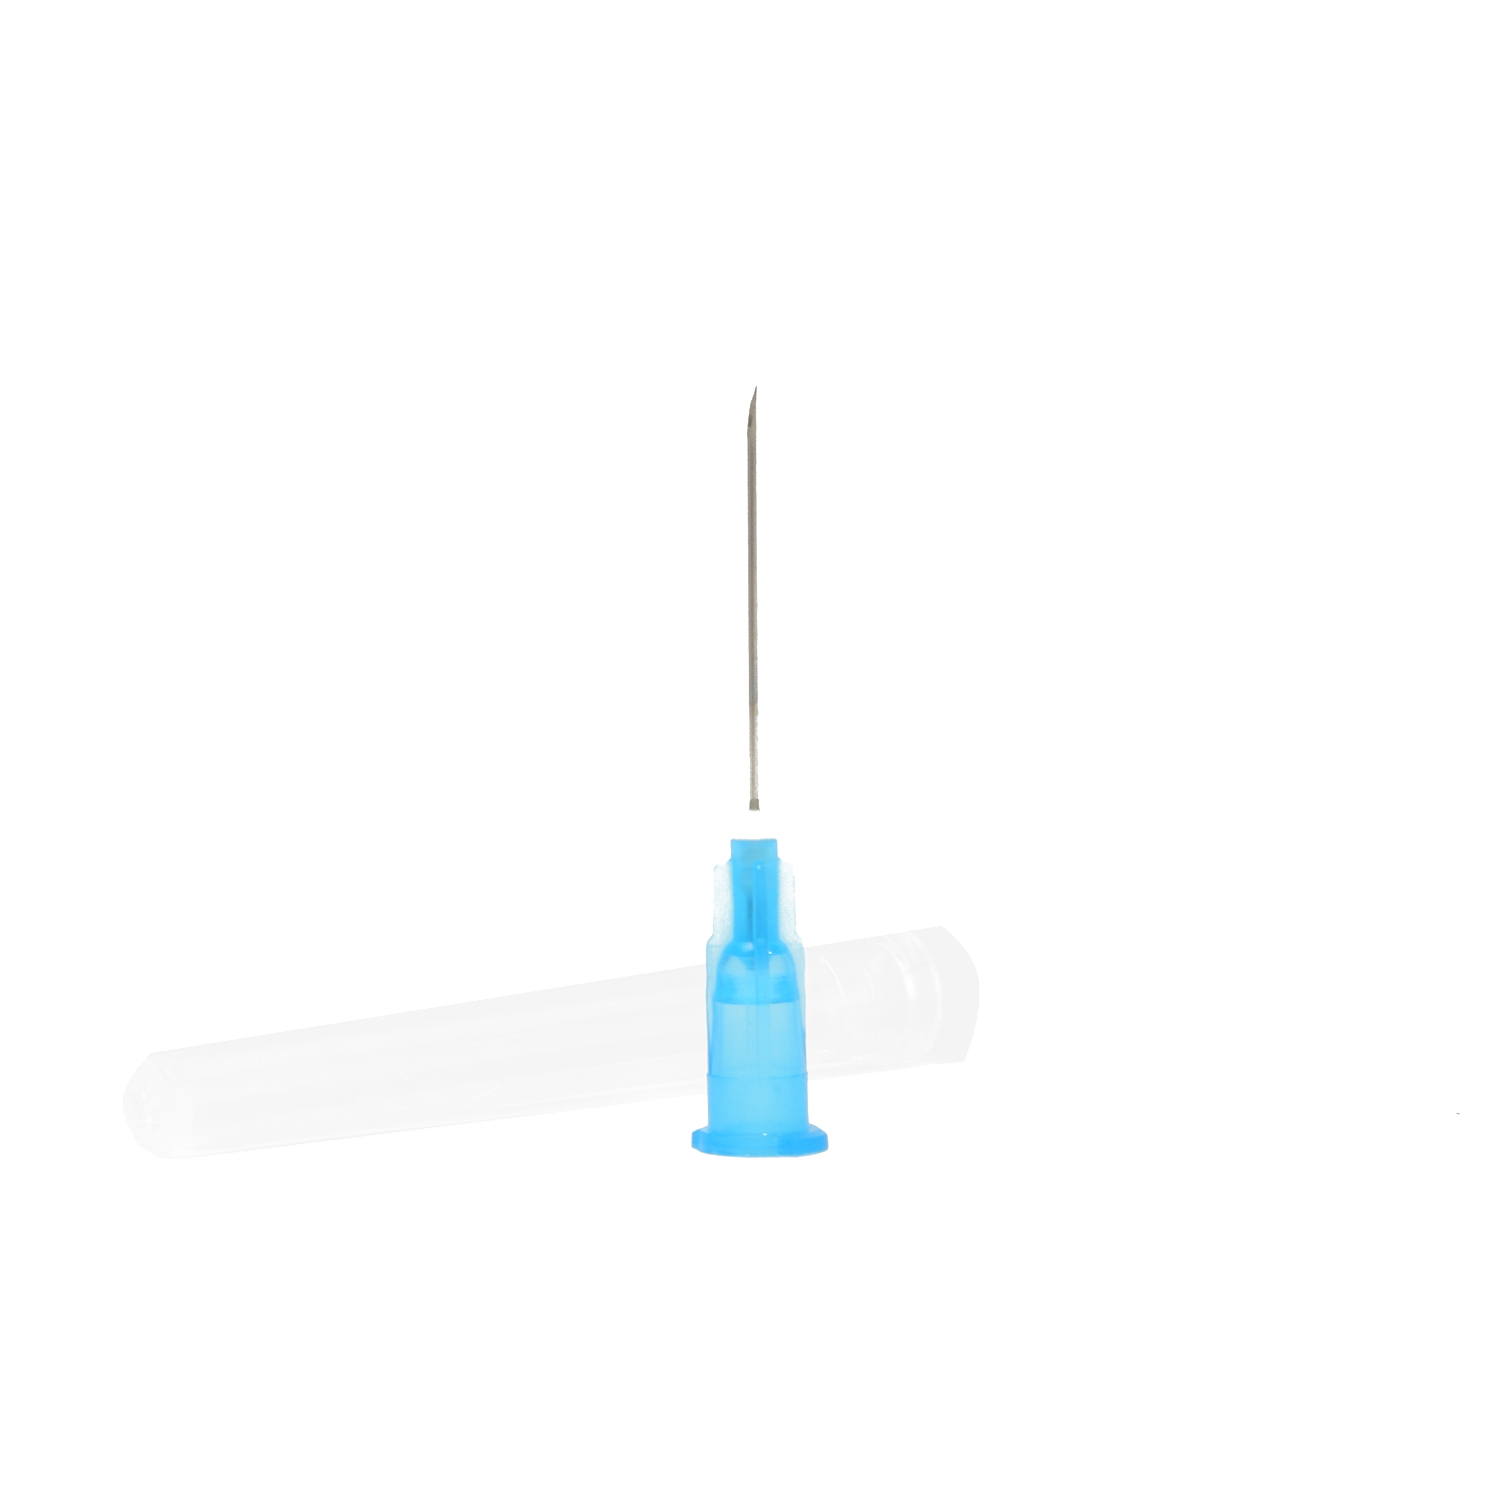 Injekciós kanül